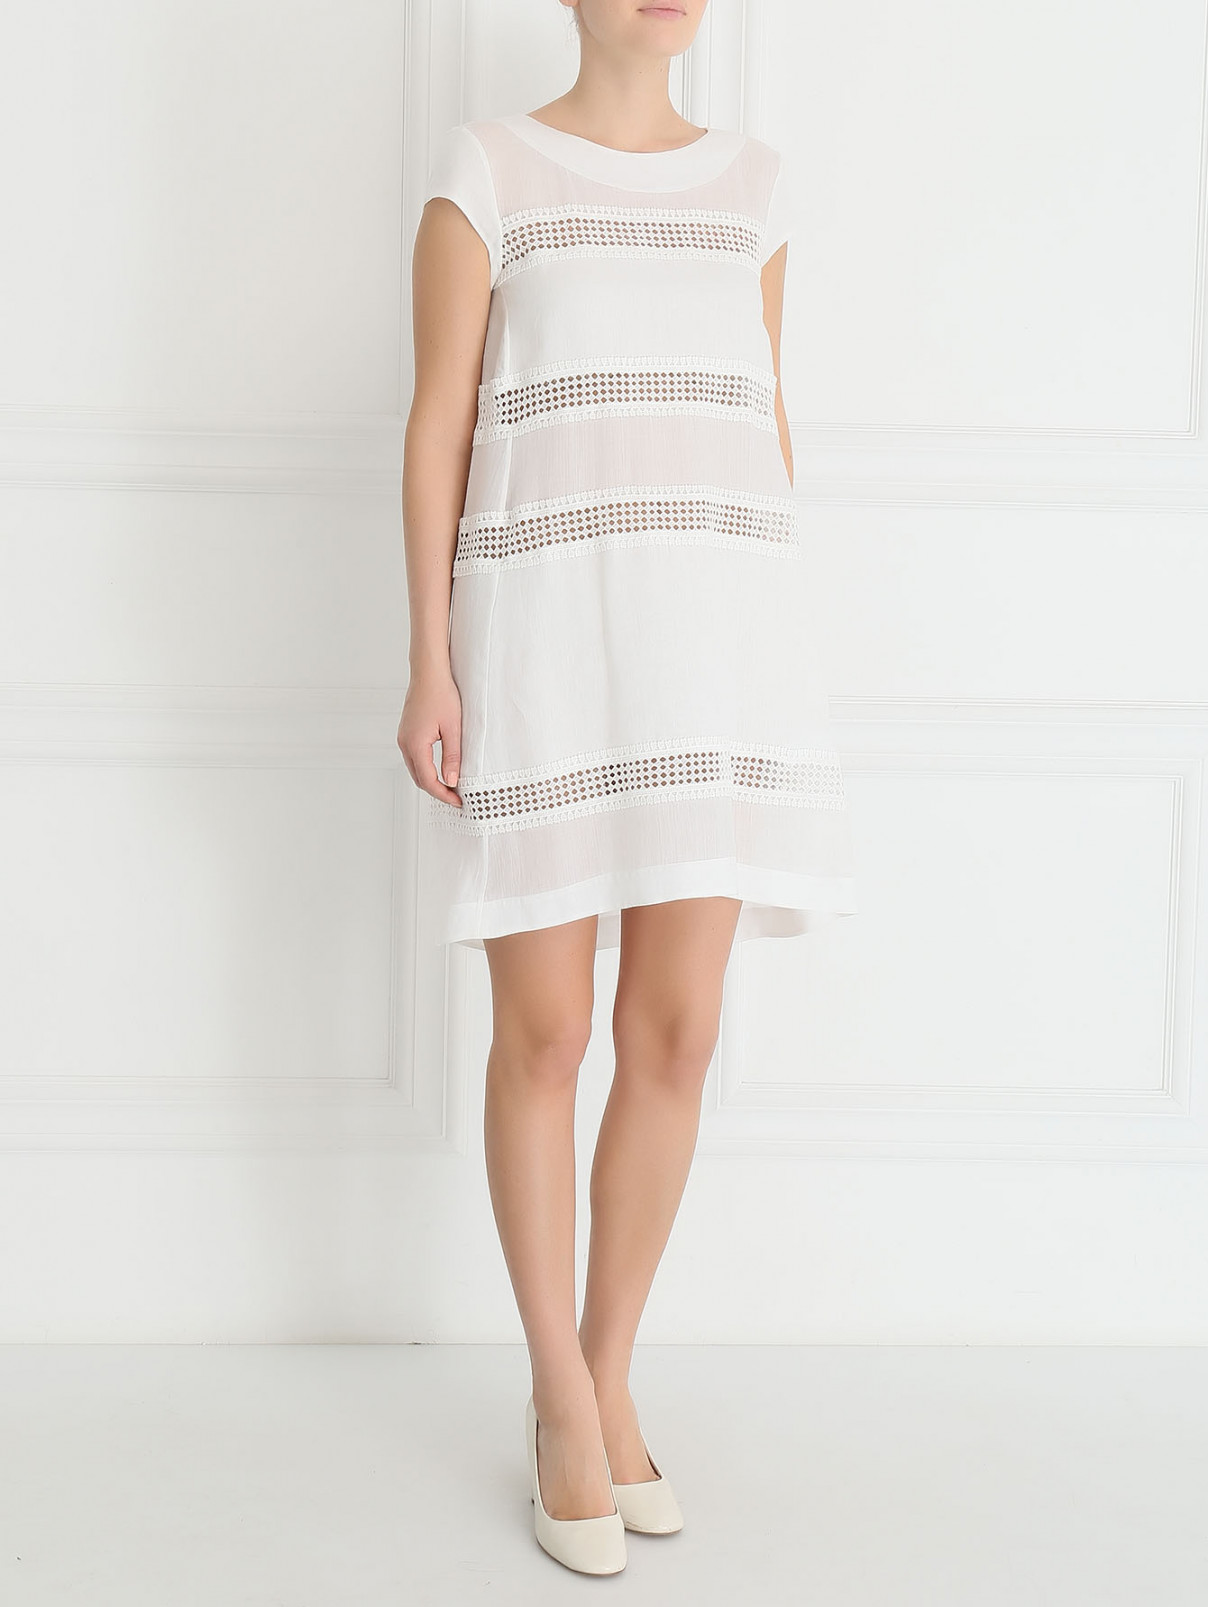 Платье-мини из хлопка с полупрозрачными вставками Ermanno Scervino  –  Модель Общий вид  – Цвет:  Белый